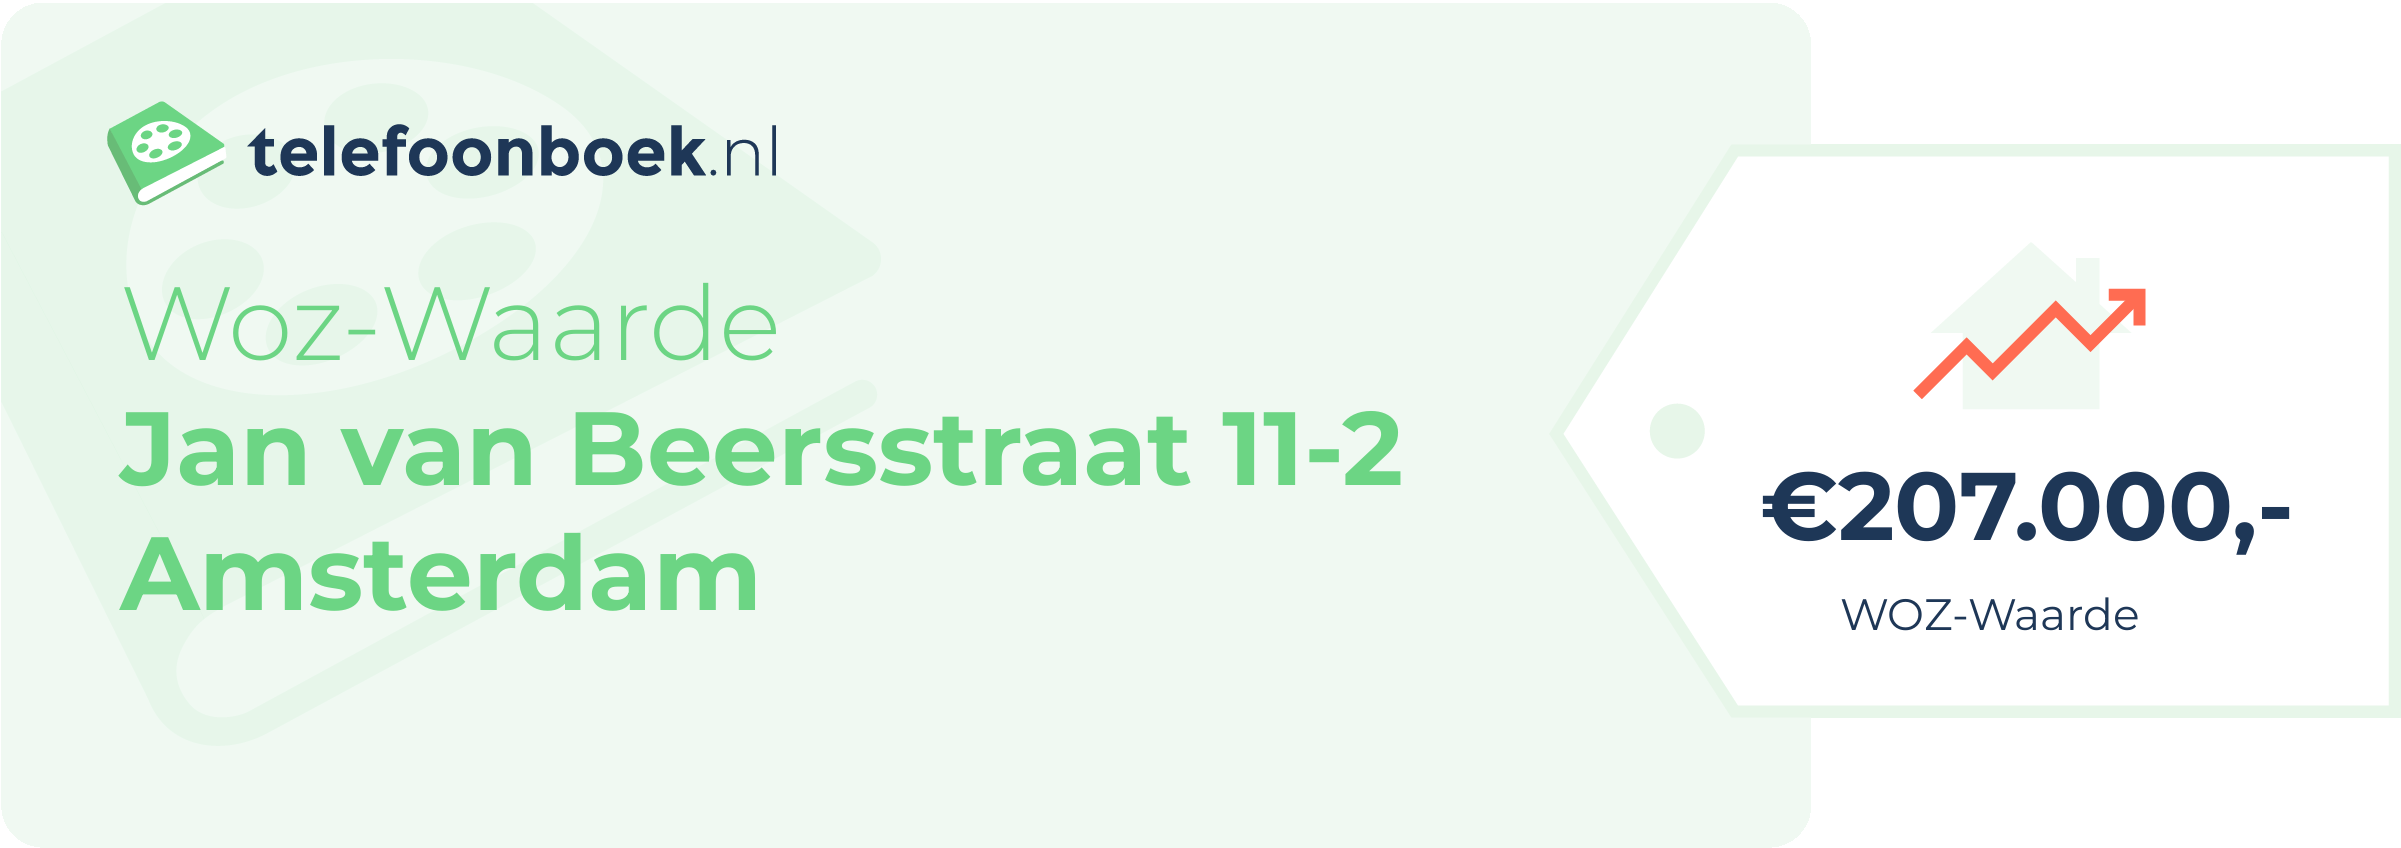 WOZ-waarde Jan Van Beersstraat 11-2 Amsterdam